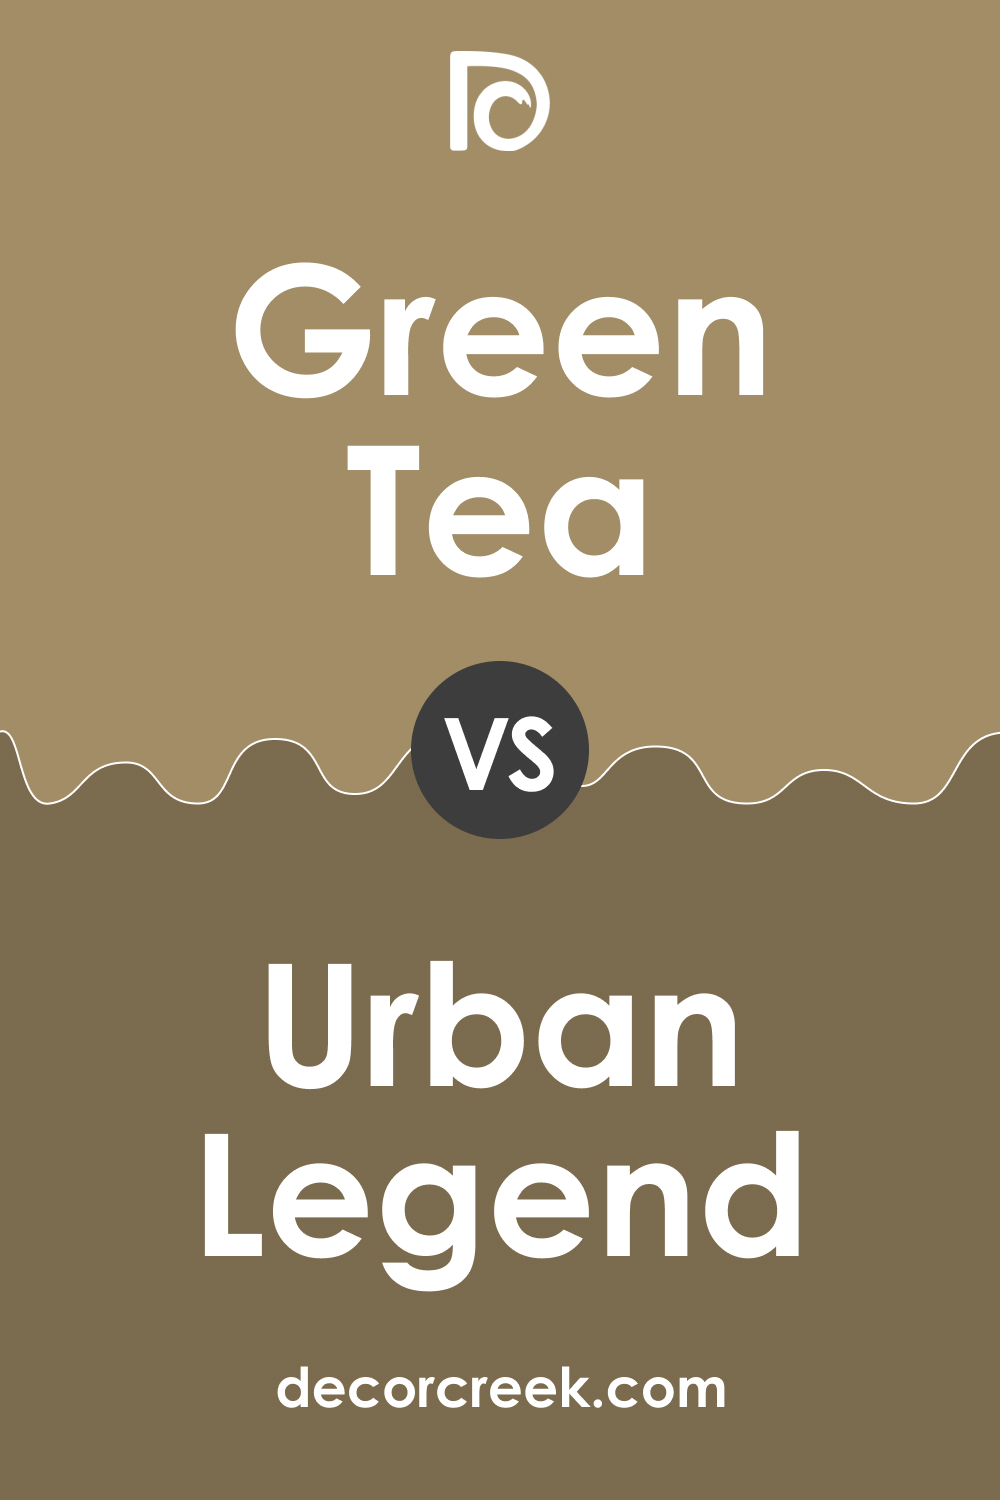 Green Tea 236 vs. BM 238 Urban Legend